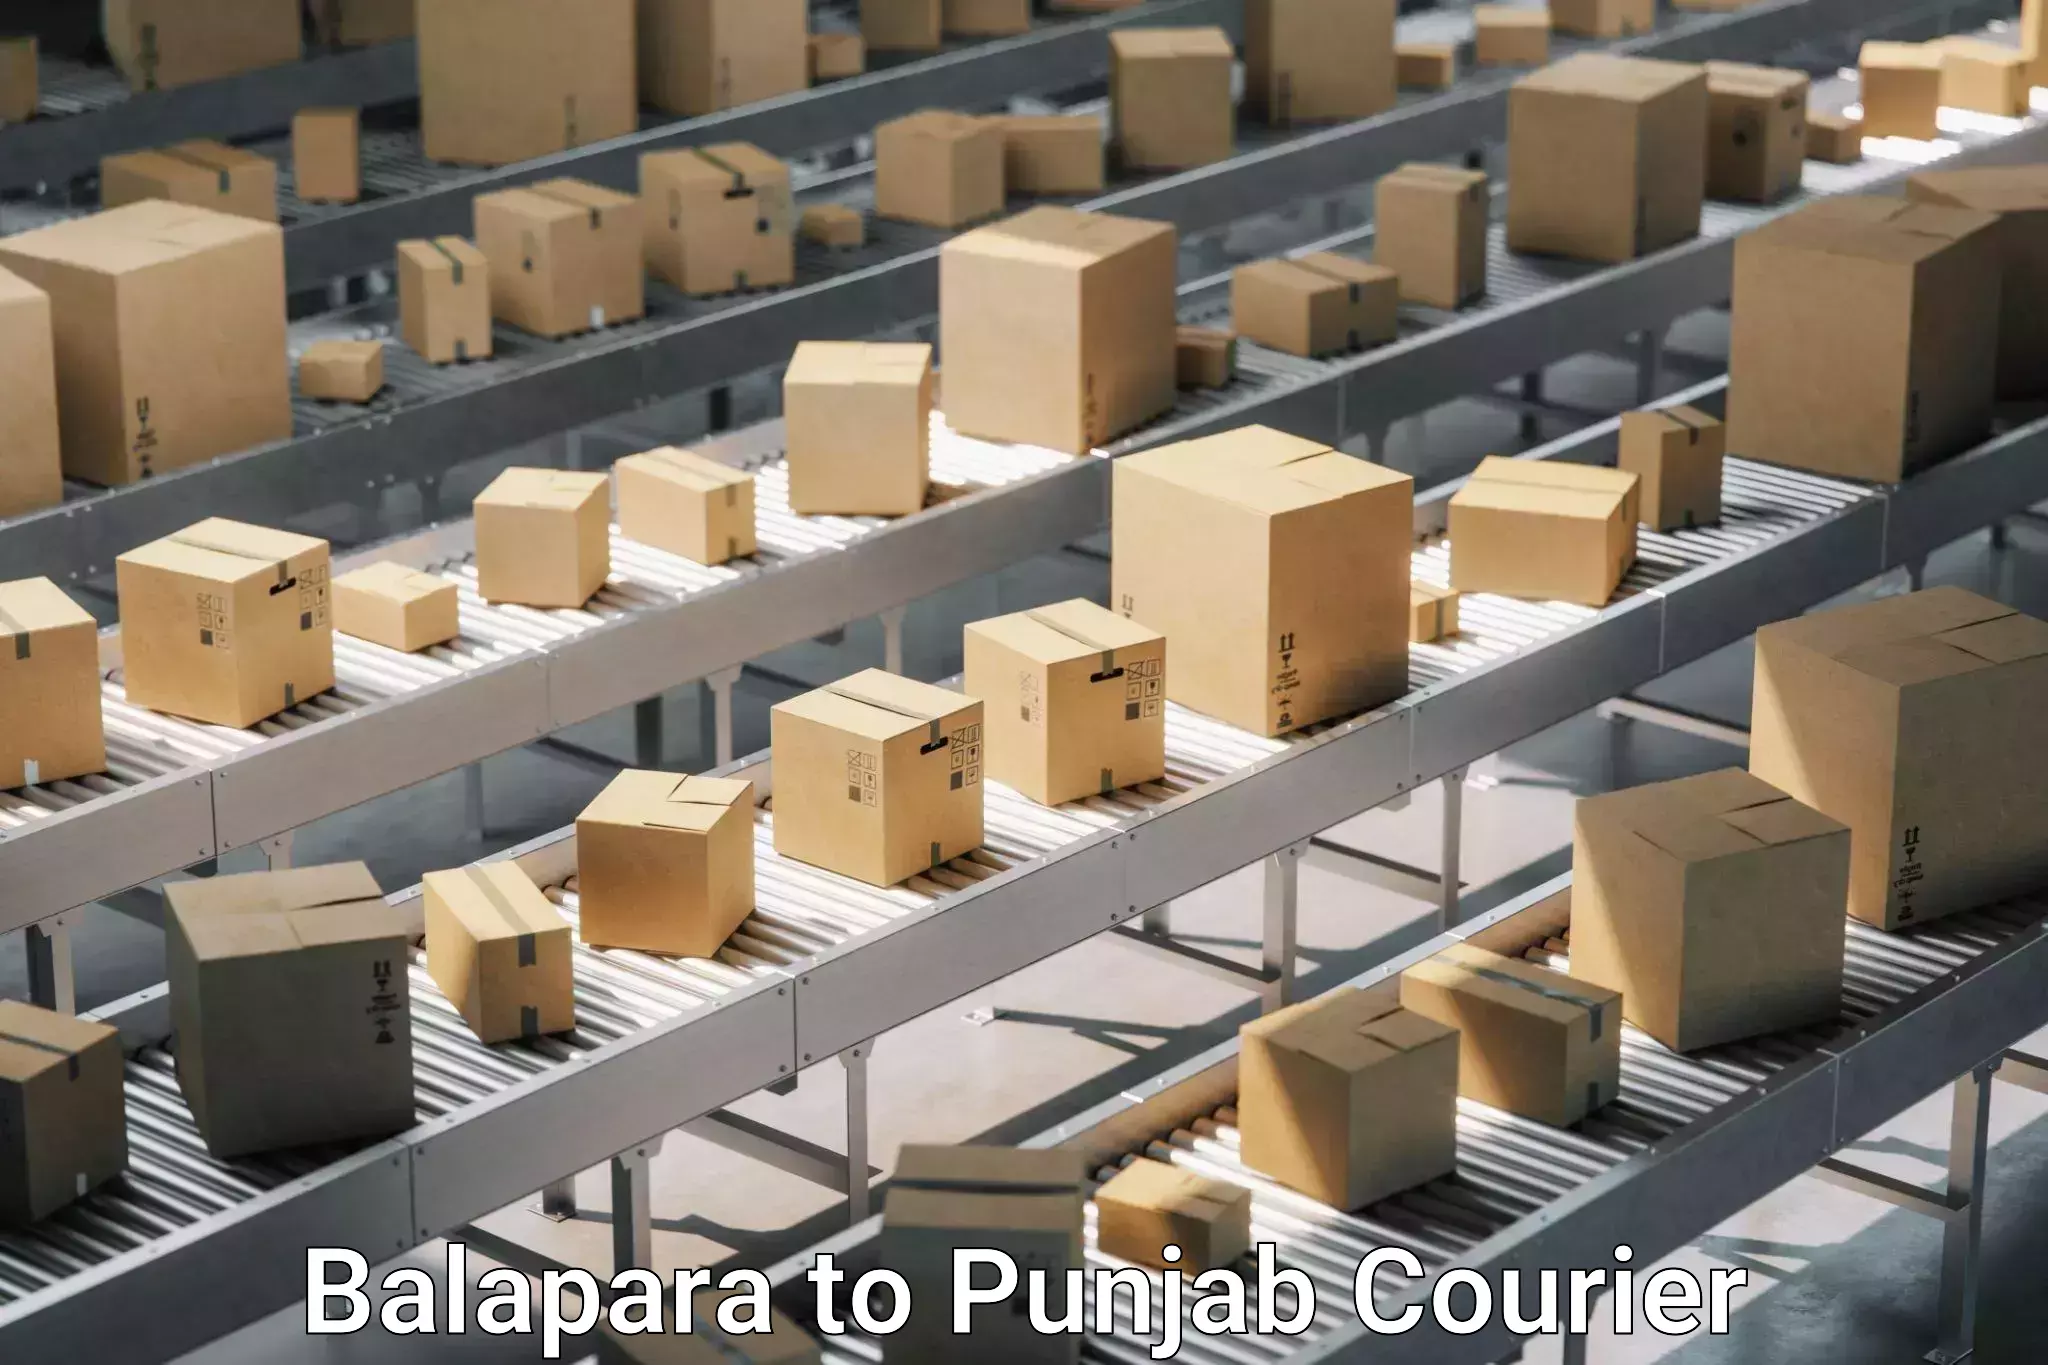 Furniture transport specialists Balapara to Rupnagar